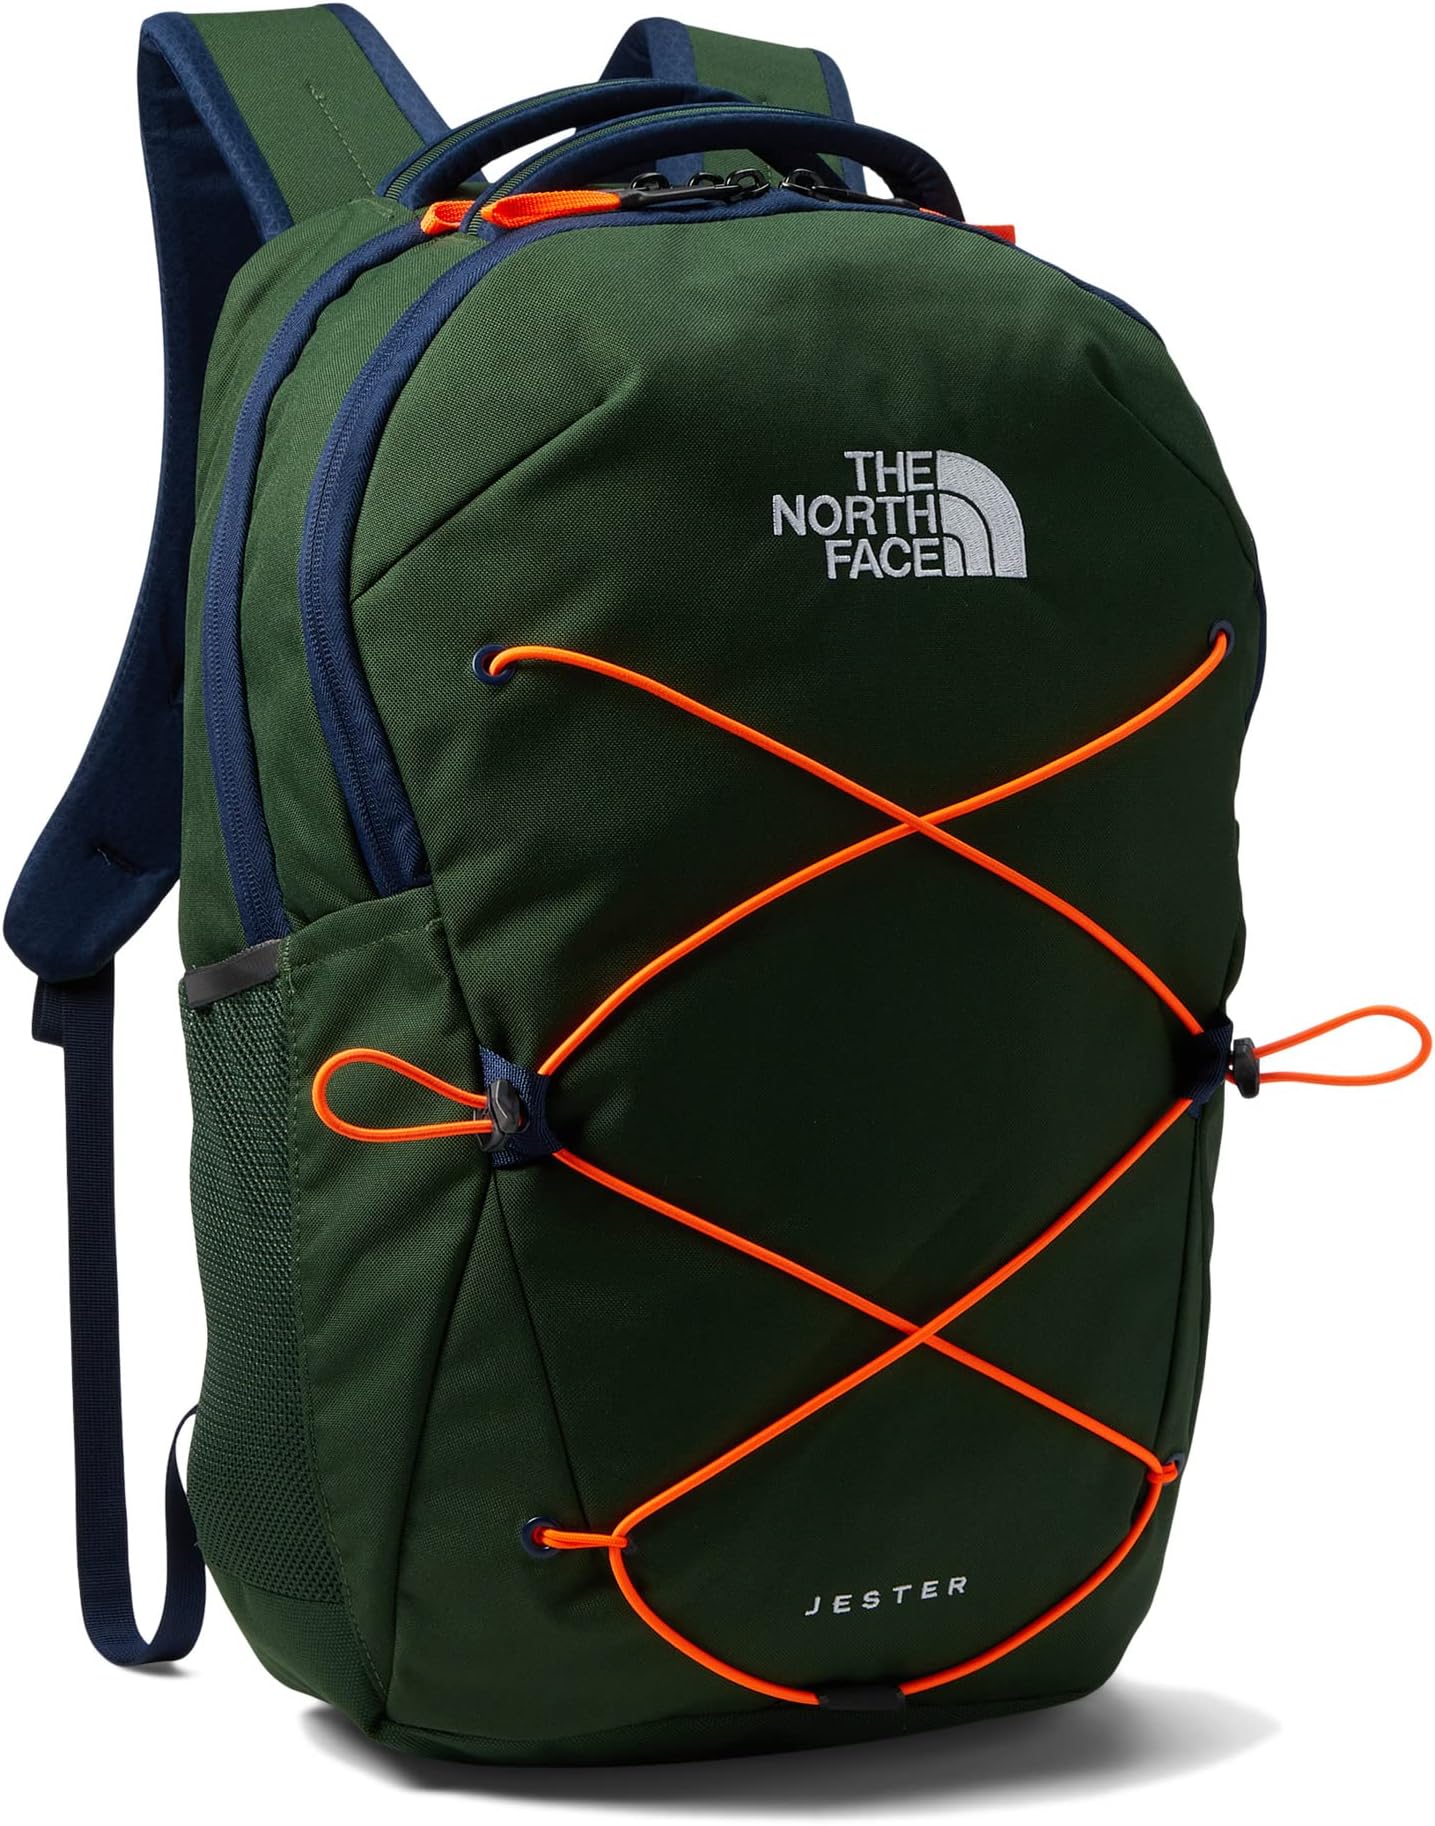 Рюкзак Jester Backpack The North Face, темно-зеленый/темно-синий/оранжевый